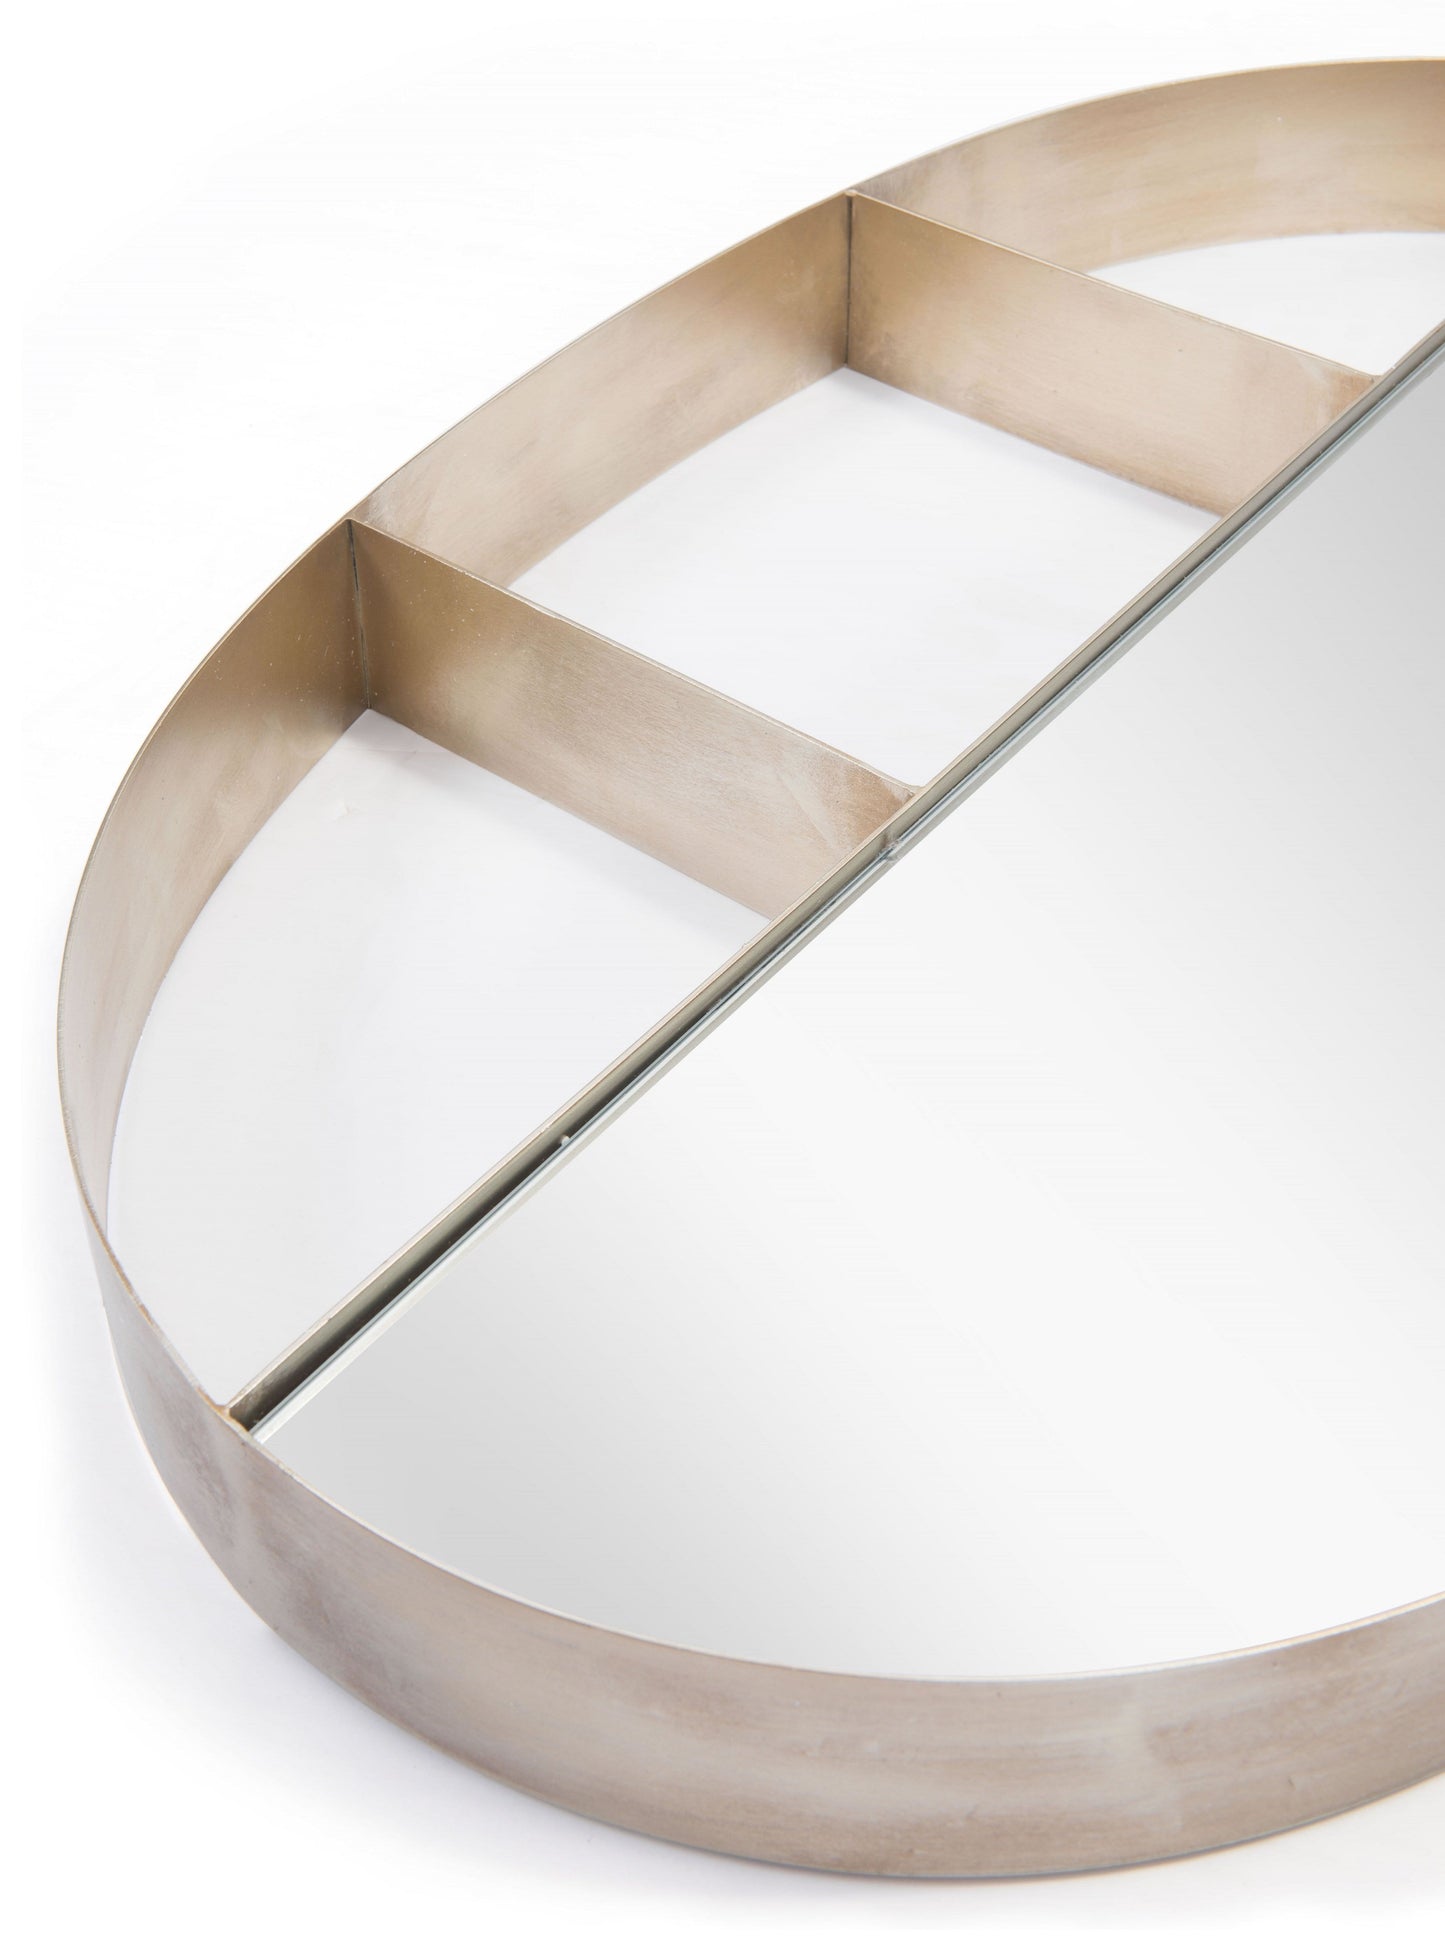 Zuo Latitude Oval Shelf Mirror (A12203)